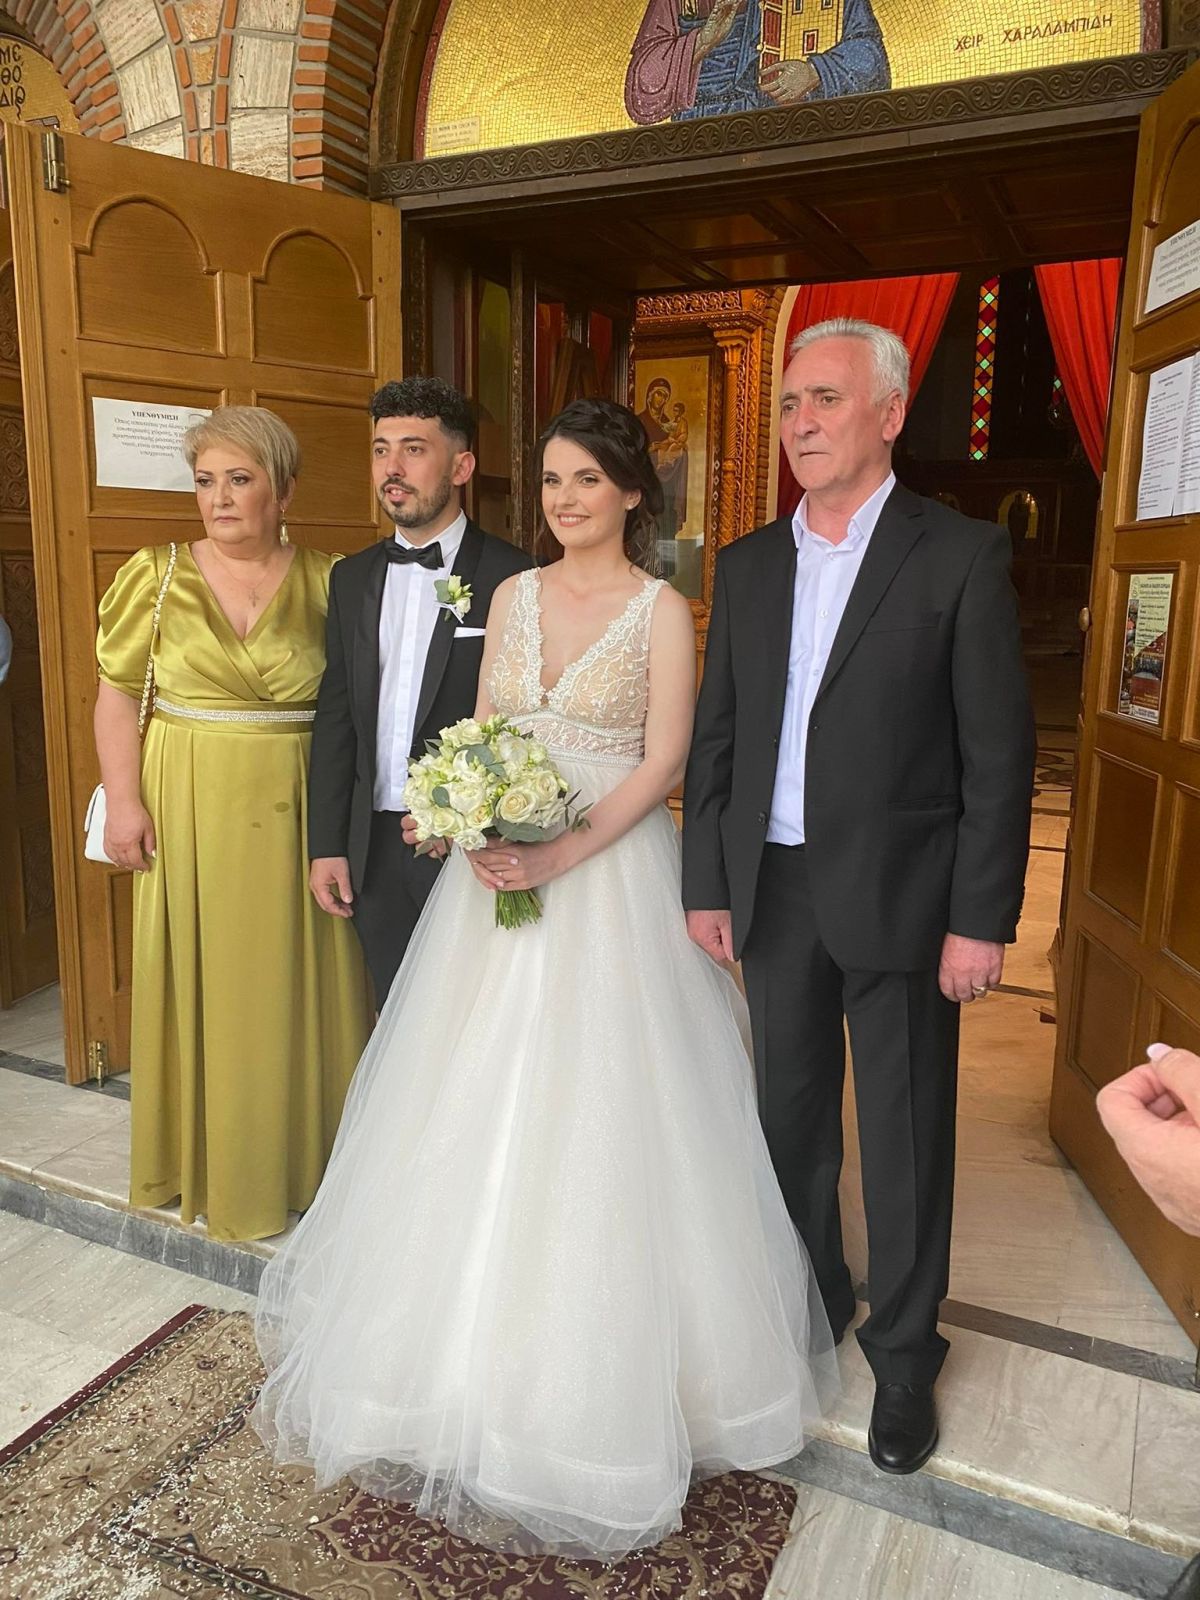 Αλκιβιάδης και Μαρία - Συγχαρητήρια για την ημέρα του γάμου σας!